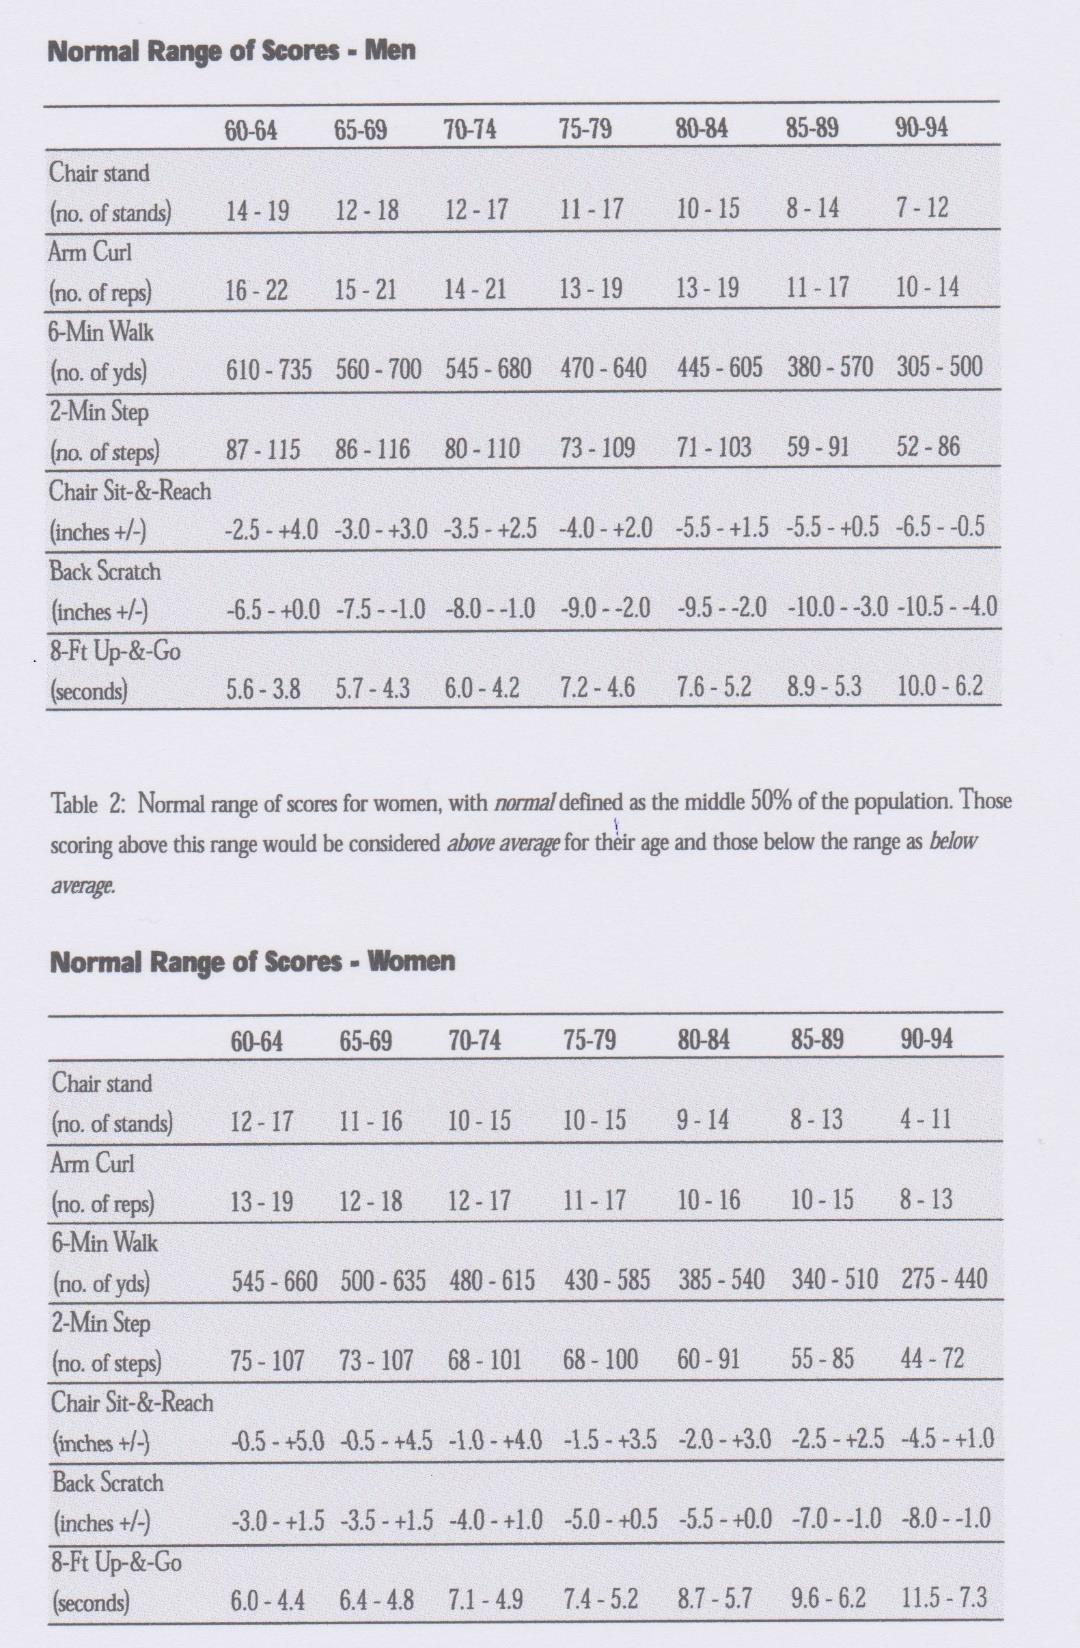 Normal range of scores van mannen en vrouwen wat ze zouden